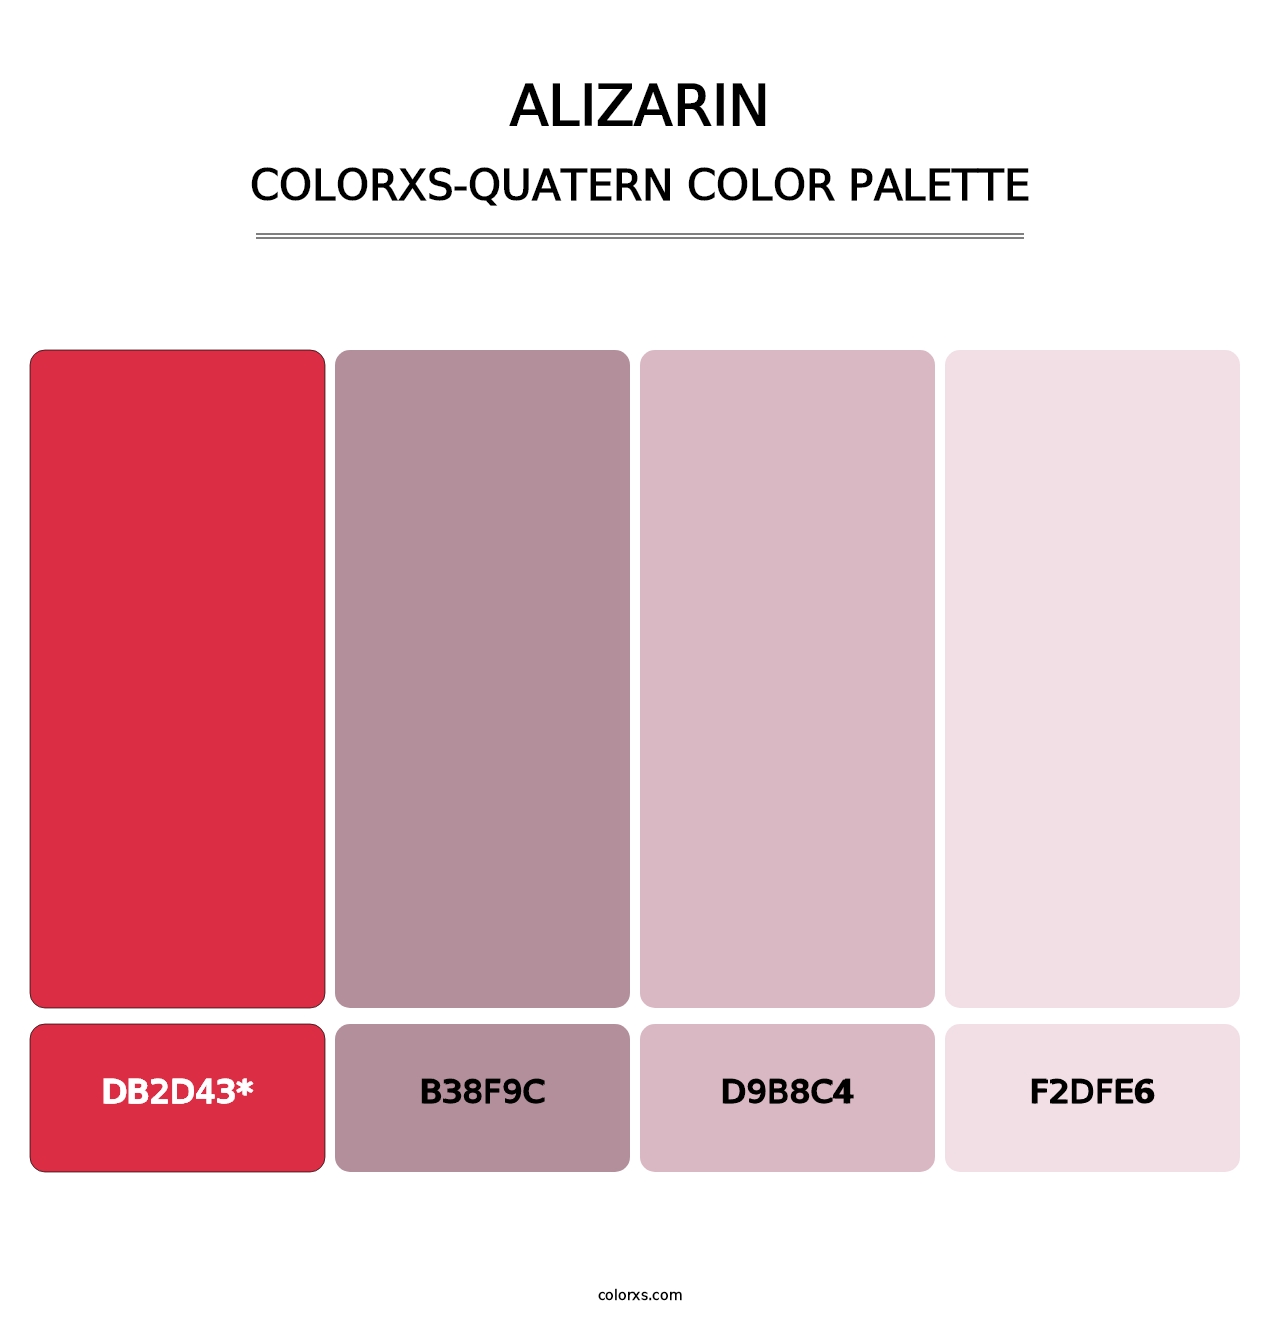 Alizarin - Colorxs Quatern Palette